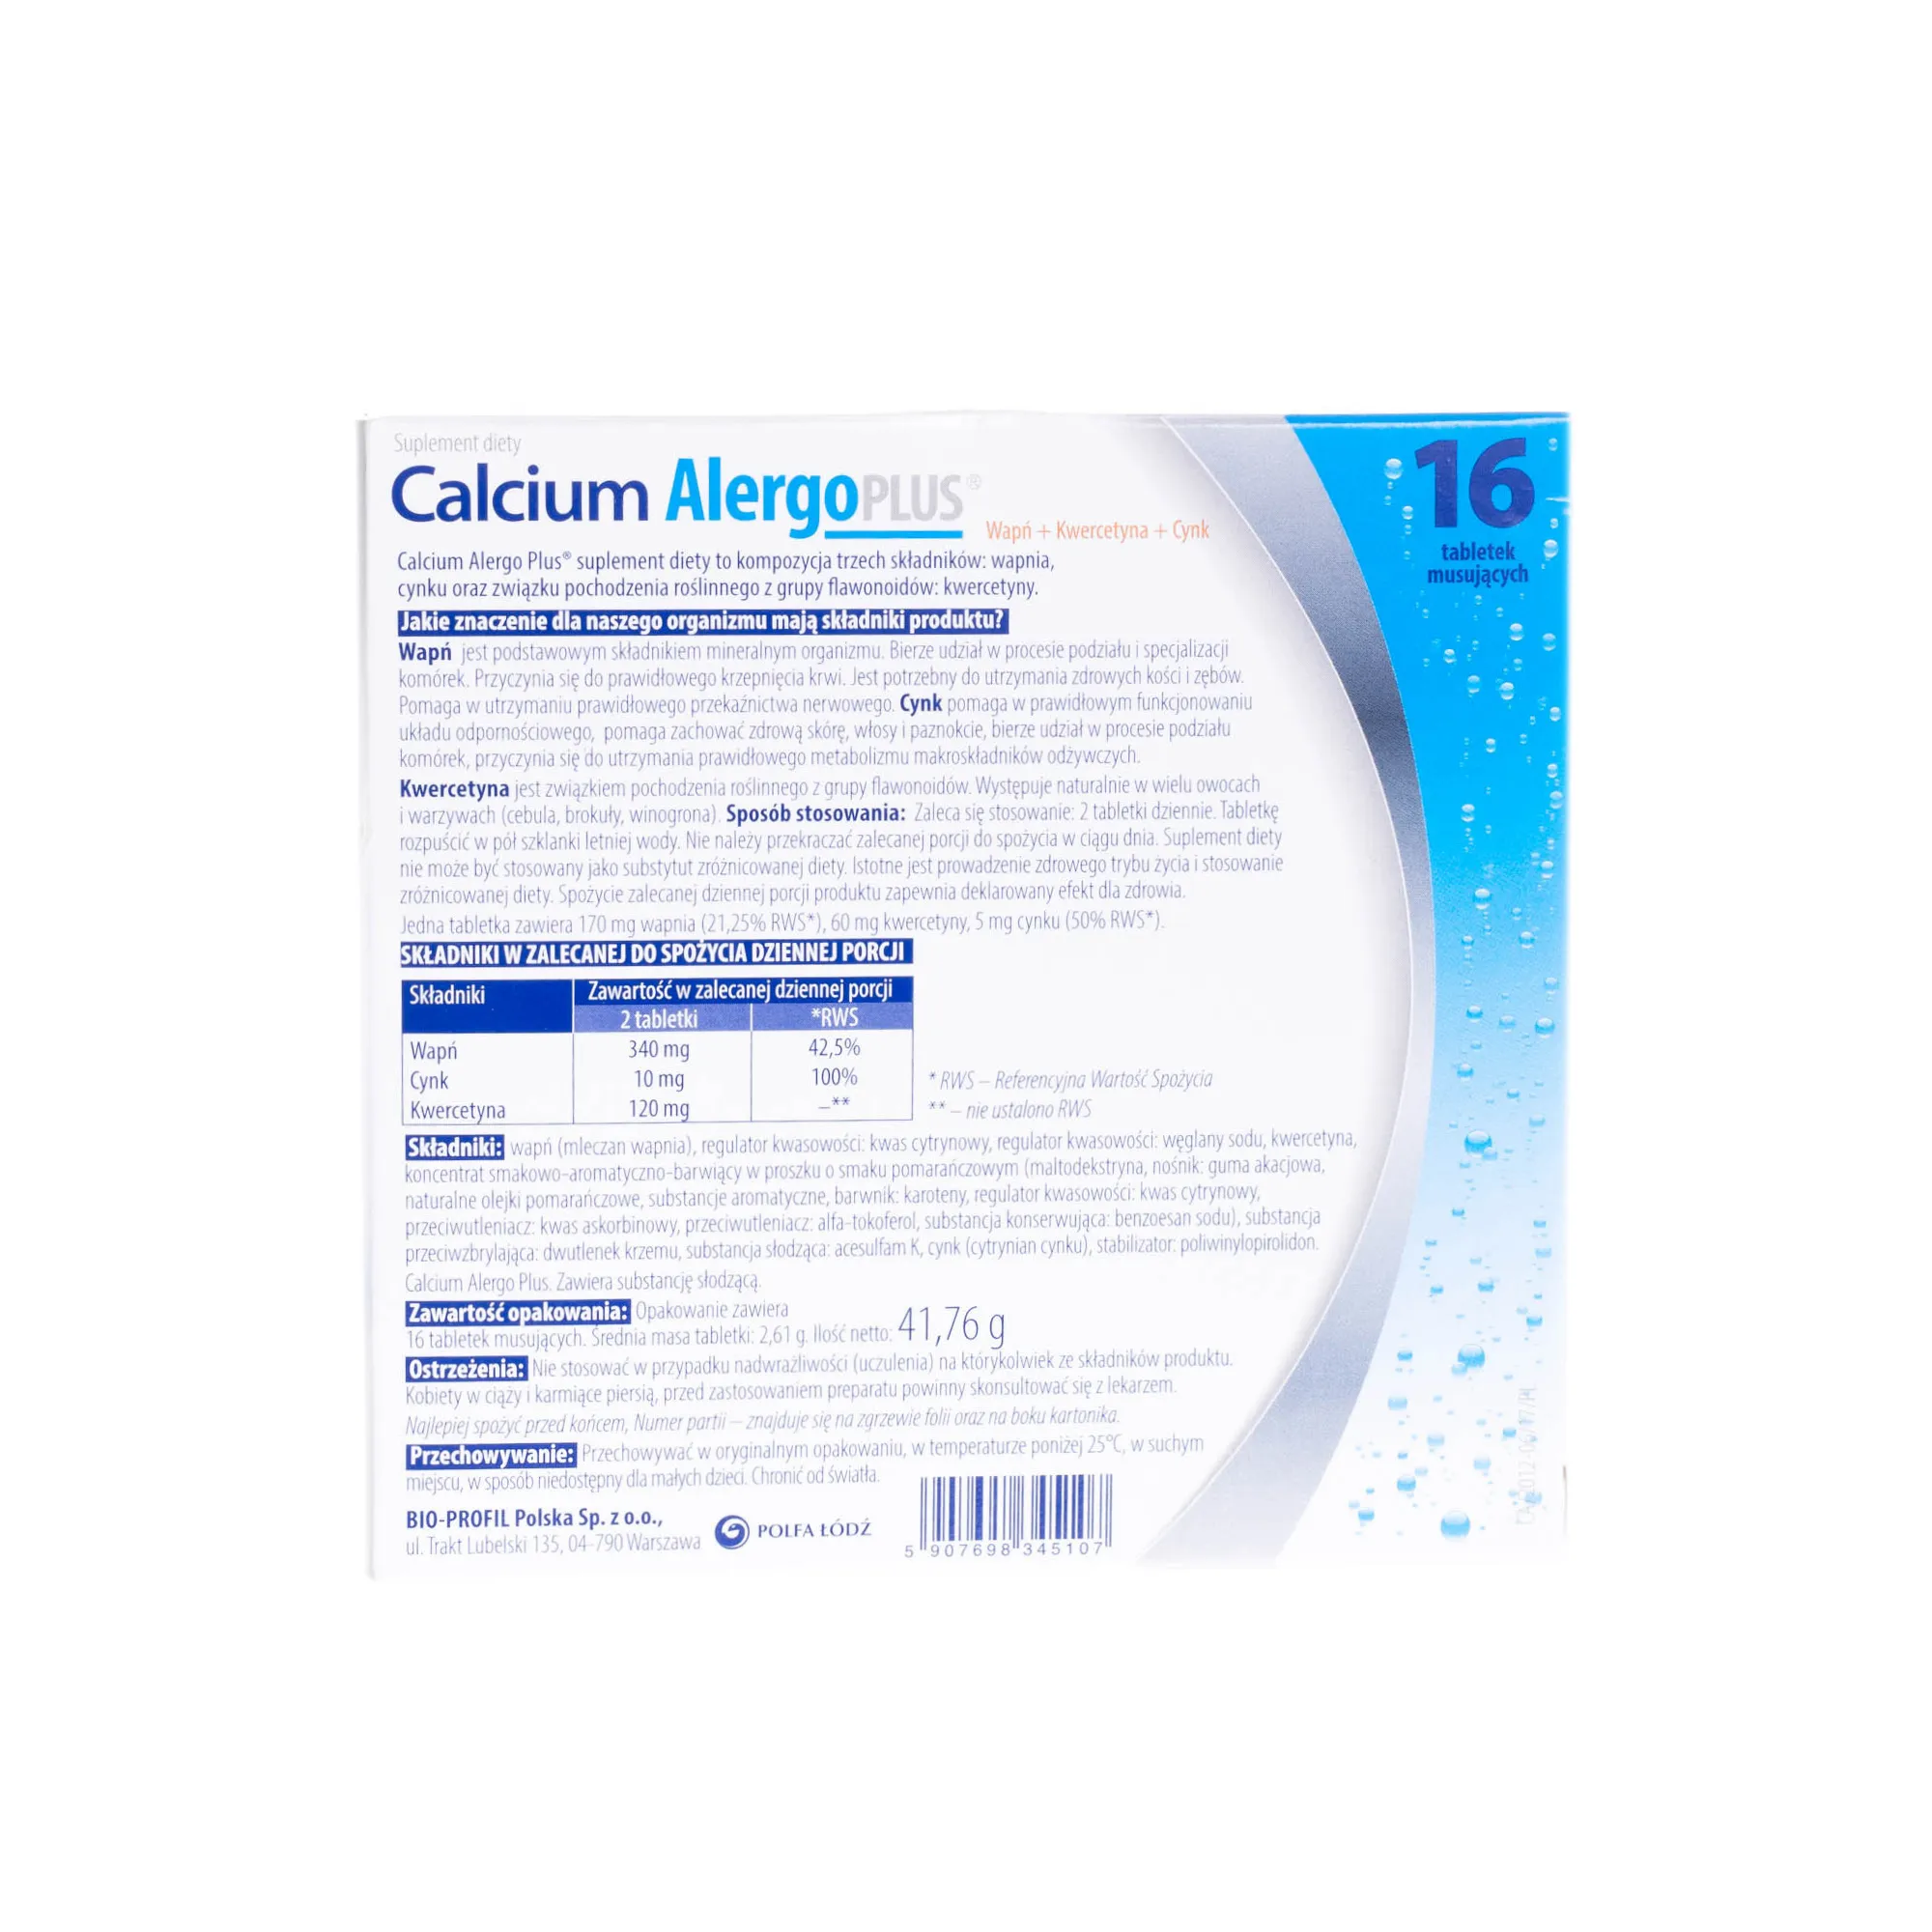 Calcium Alergo Plus - suplement diety, 16 tabletek musujących 